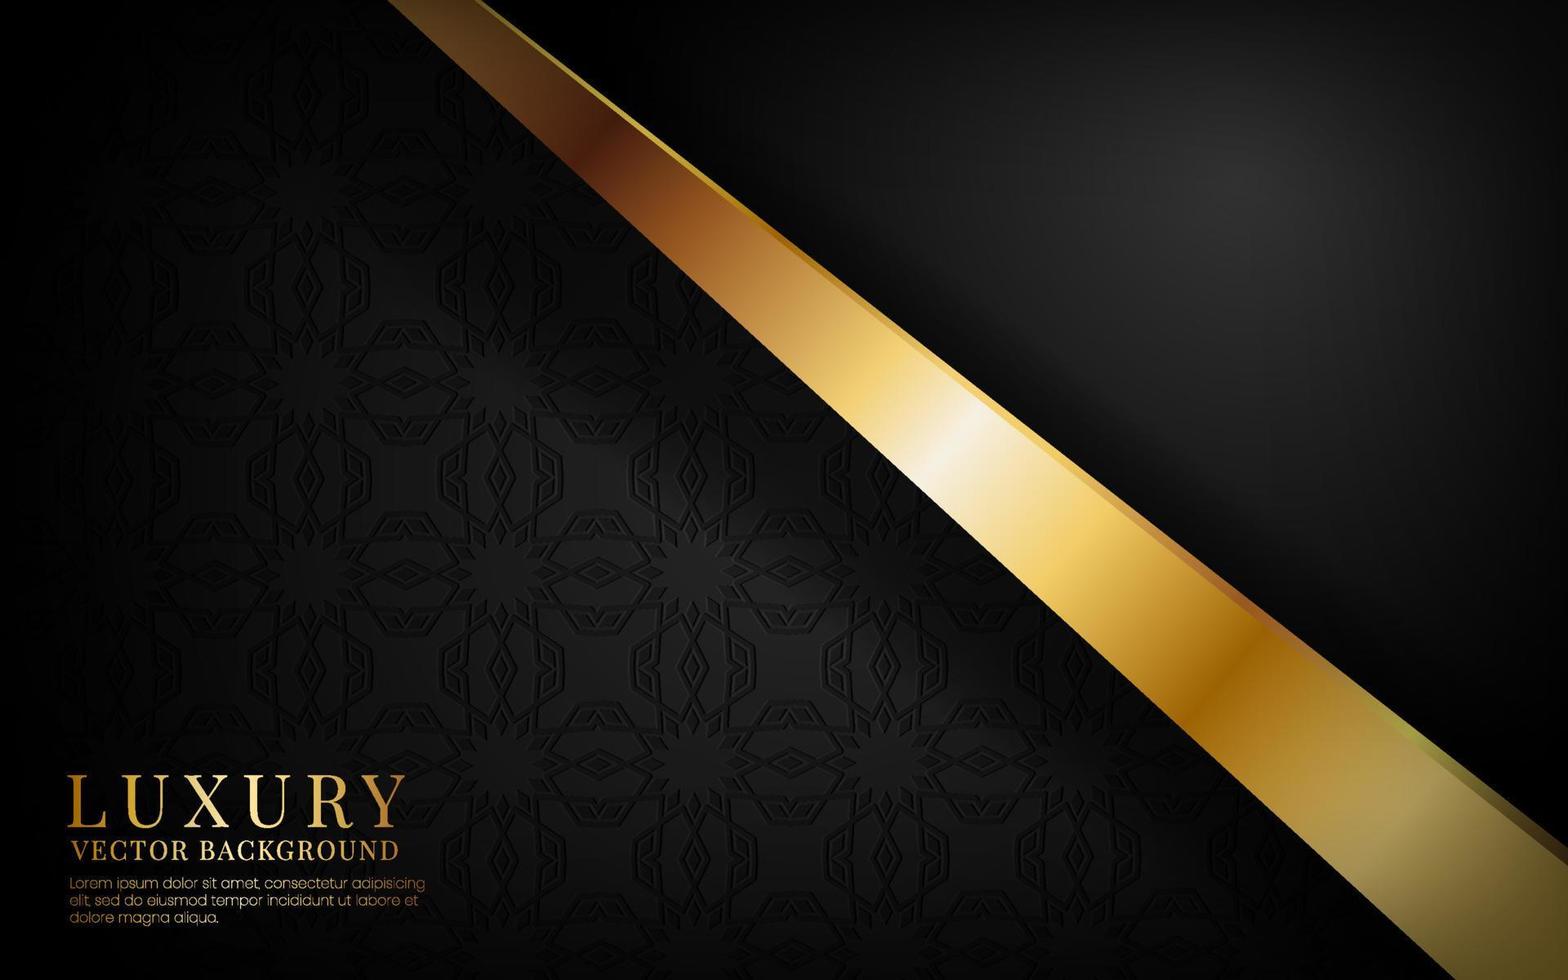 3D-zwarte luxe abstracte achtergrond, overlappende laag op donkere ruimte met gouden effen streepeffect decoratie. moderne sjabloonelement toekomstige stijl voor flyer, banner, omslag, brochure of bestemmingspagina vector